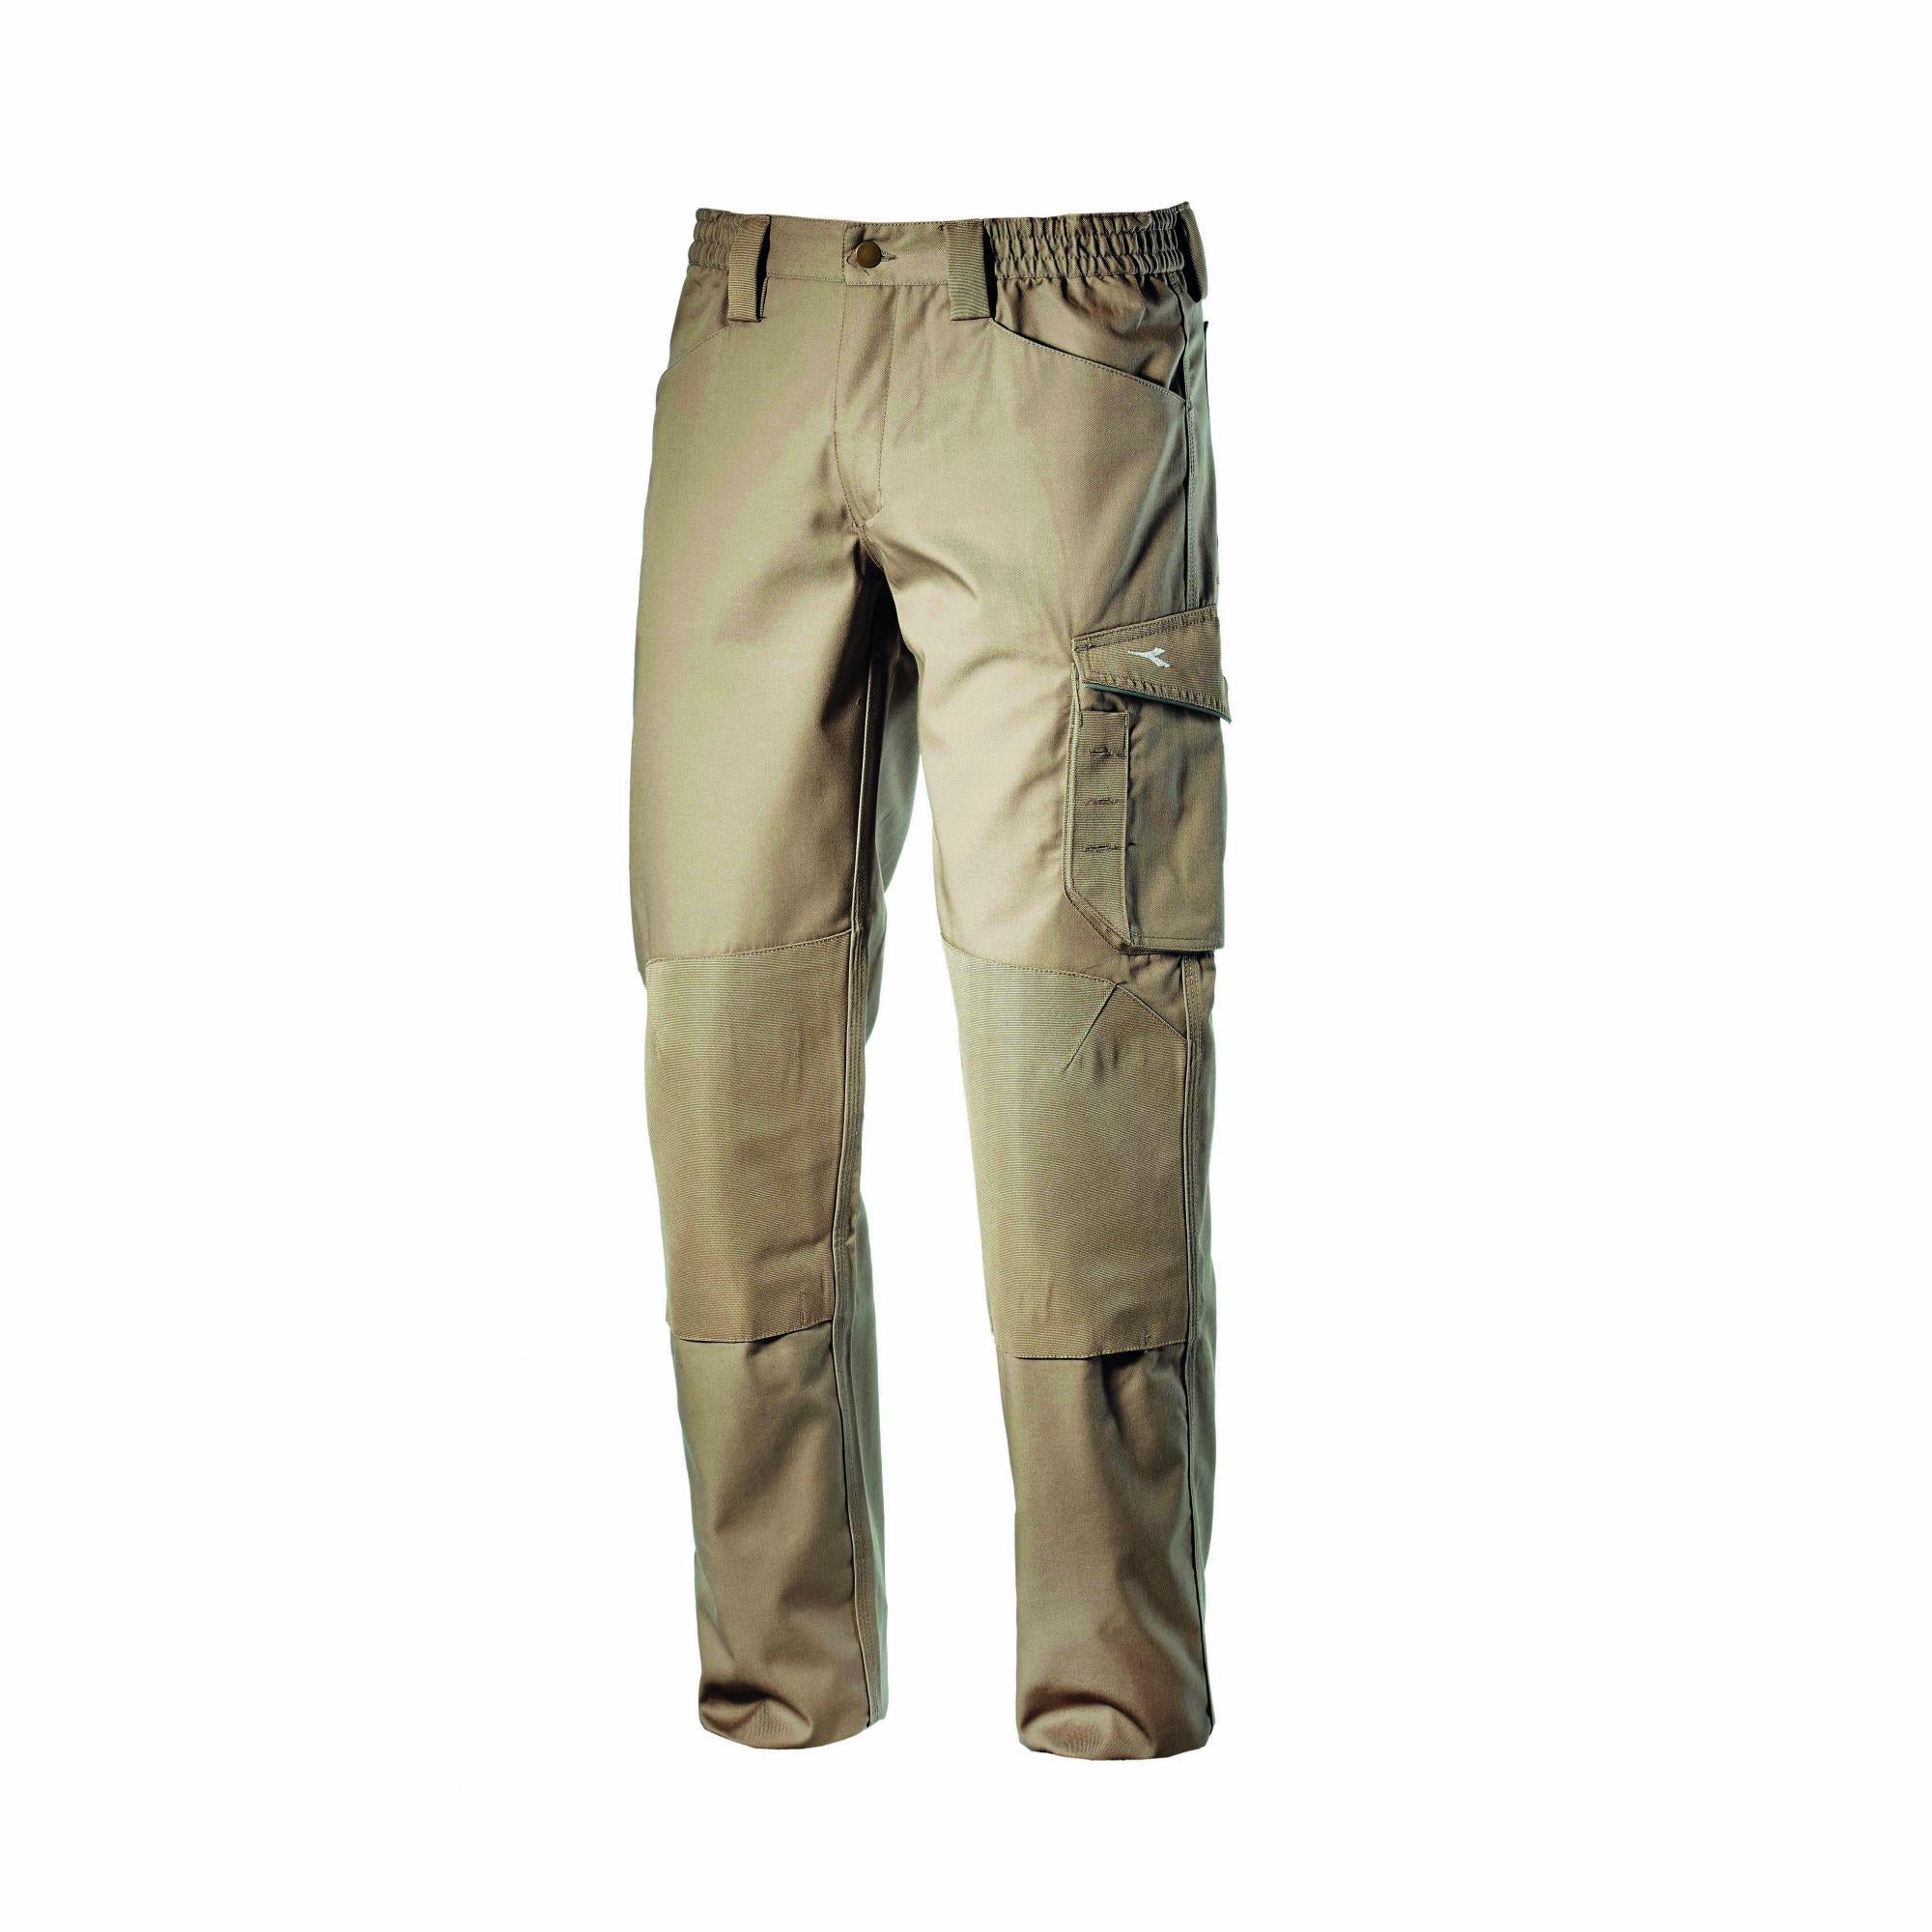 Pantaloni da lavoro Top PERF colore: Nero ISO 13688:2013 Marca: DiadoraDiadora PZ Performance 